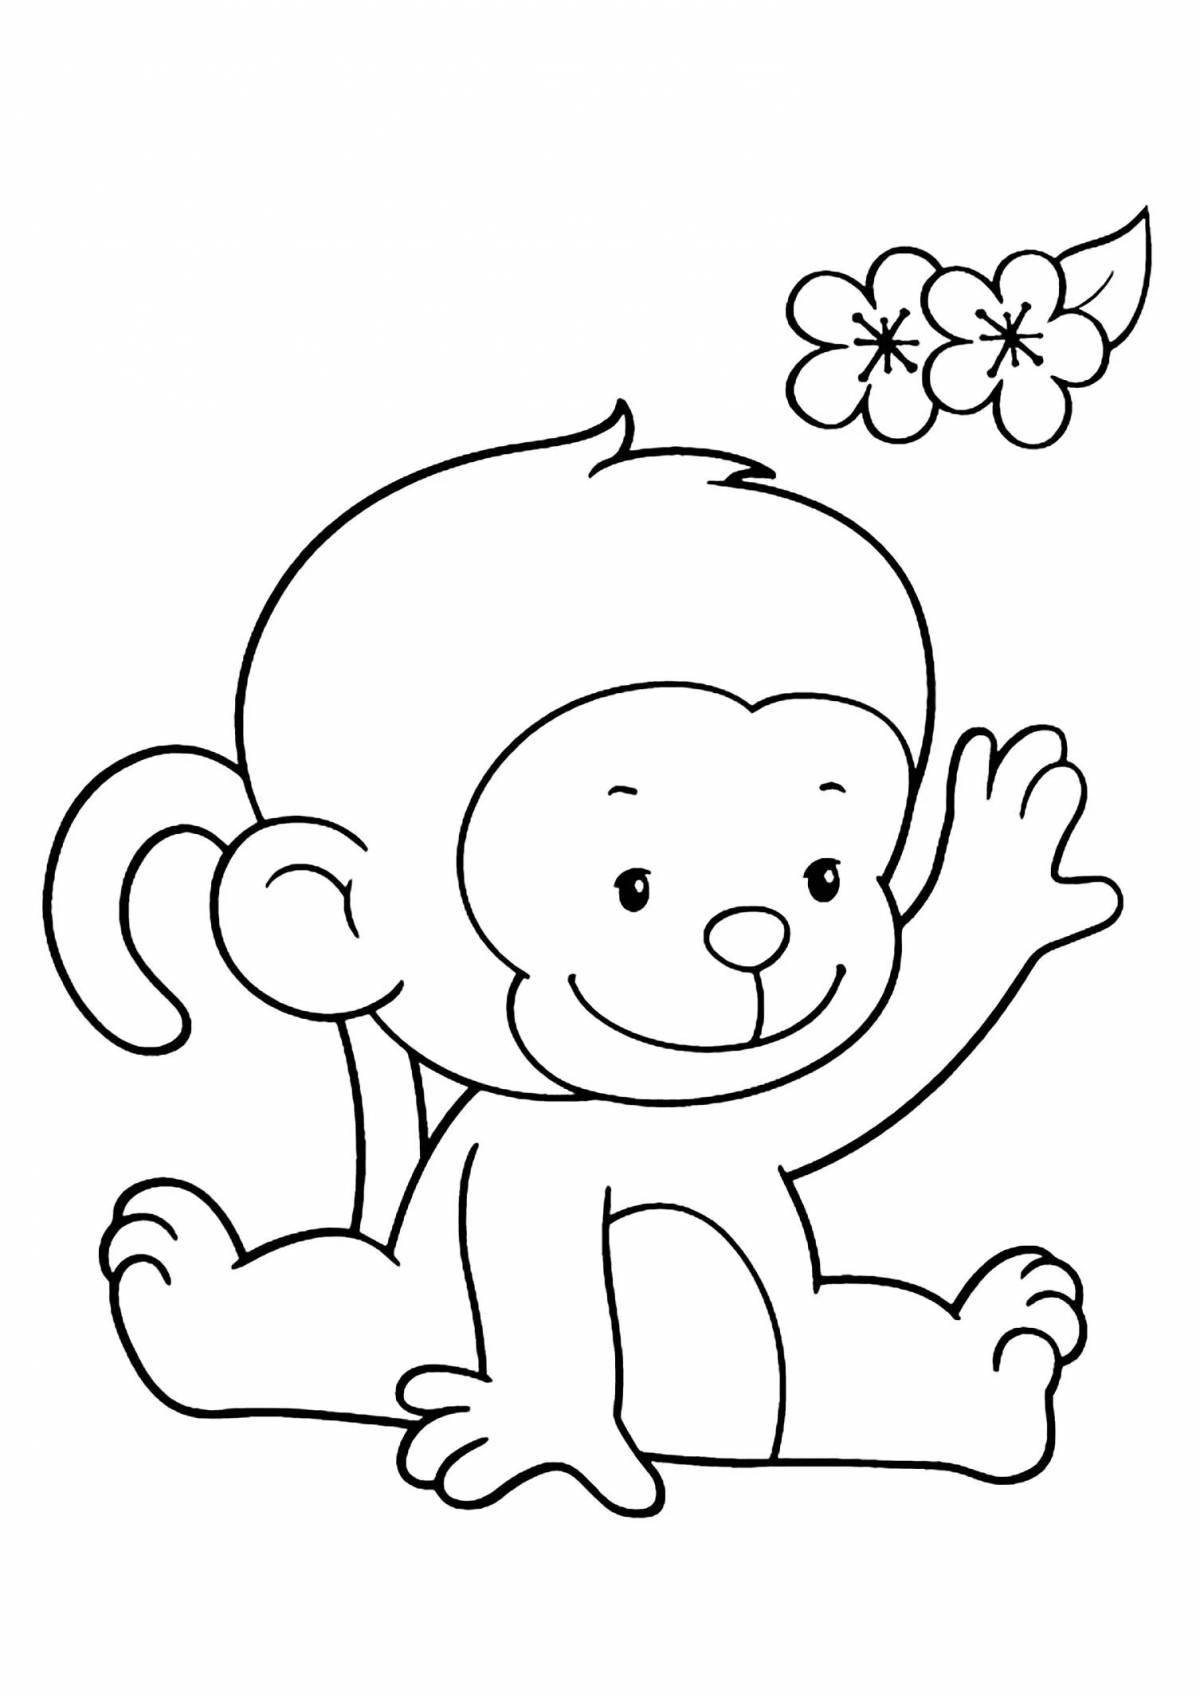 Joyful monkey drawing for kids